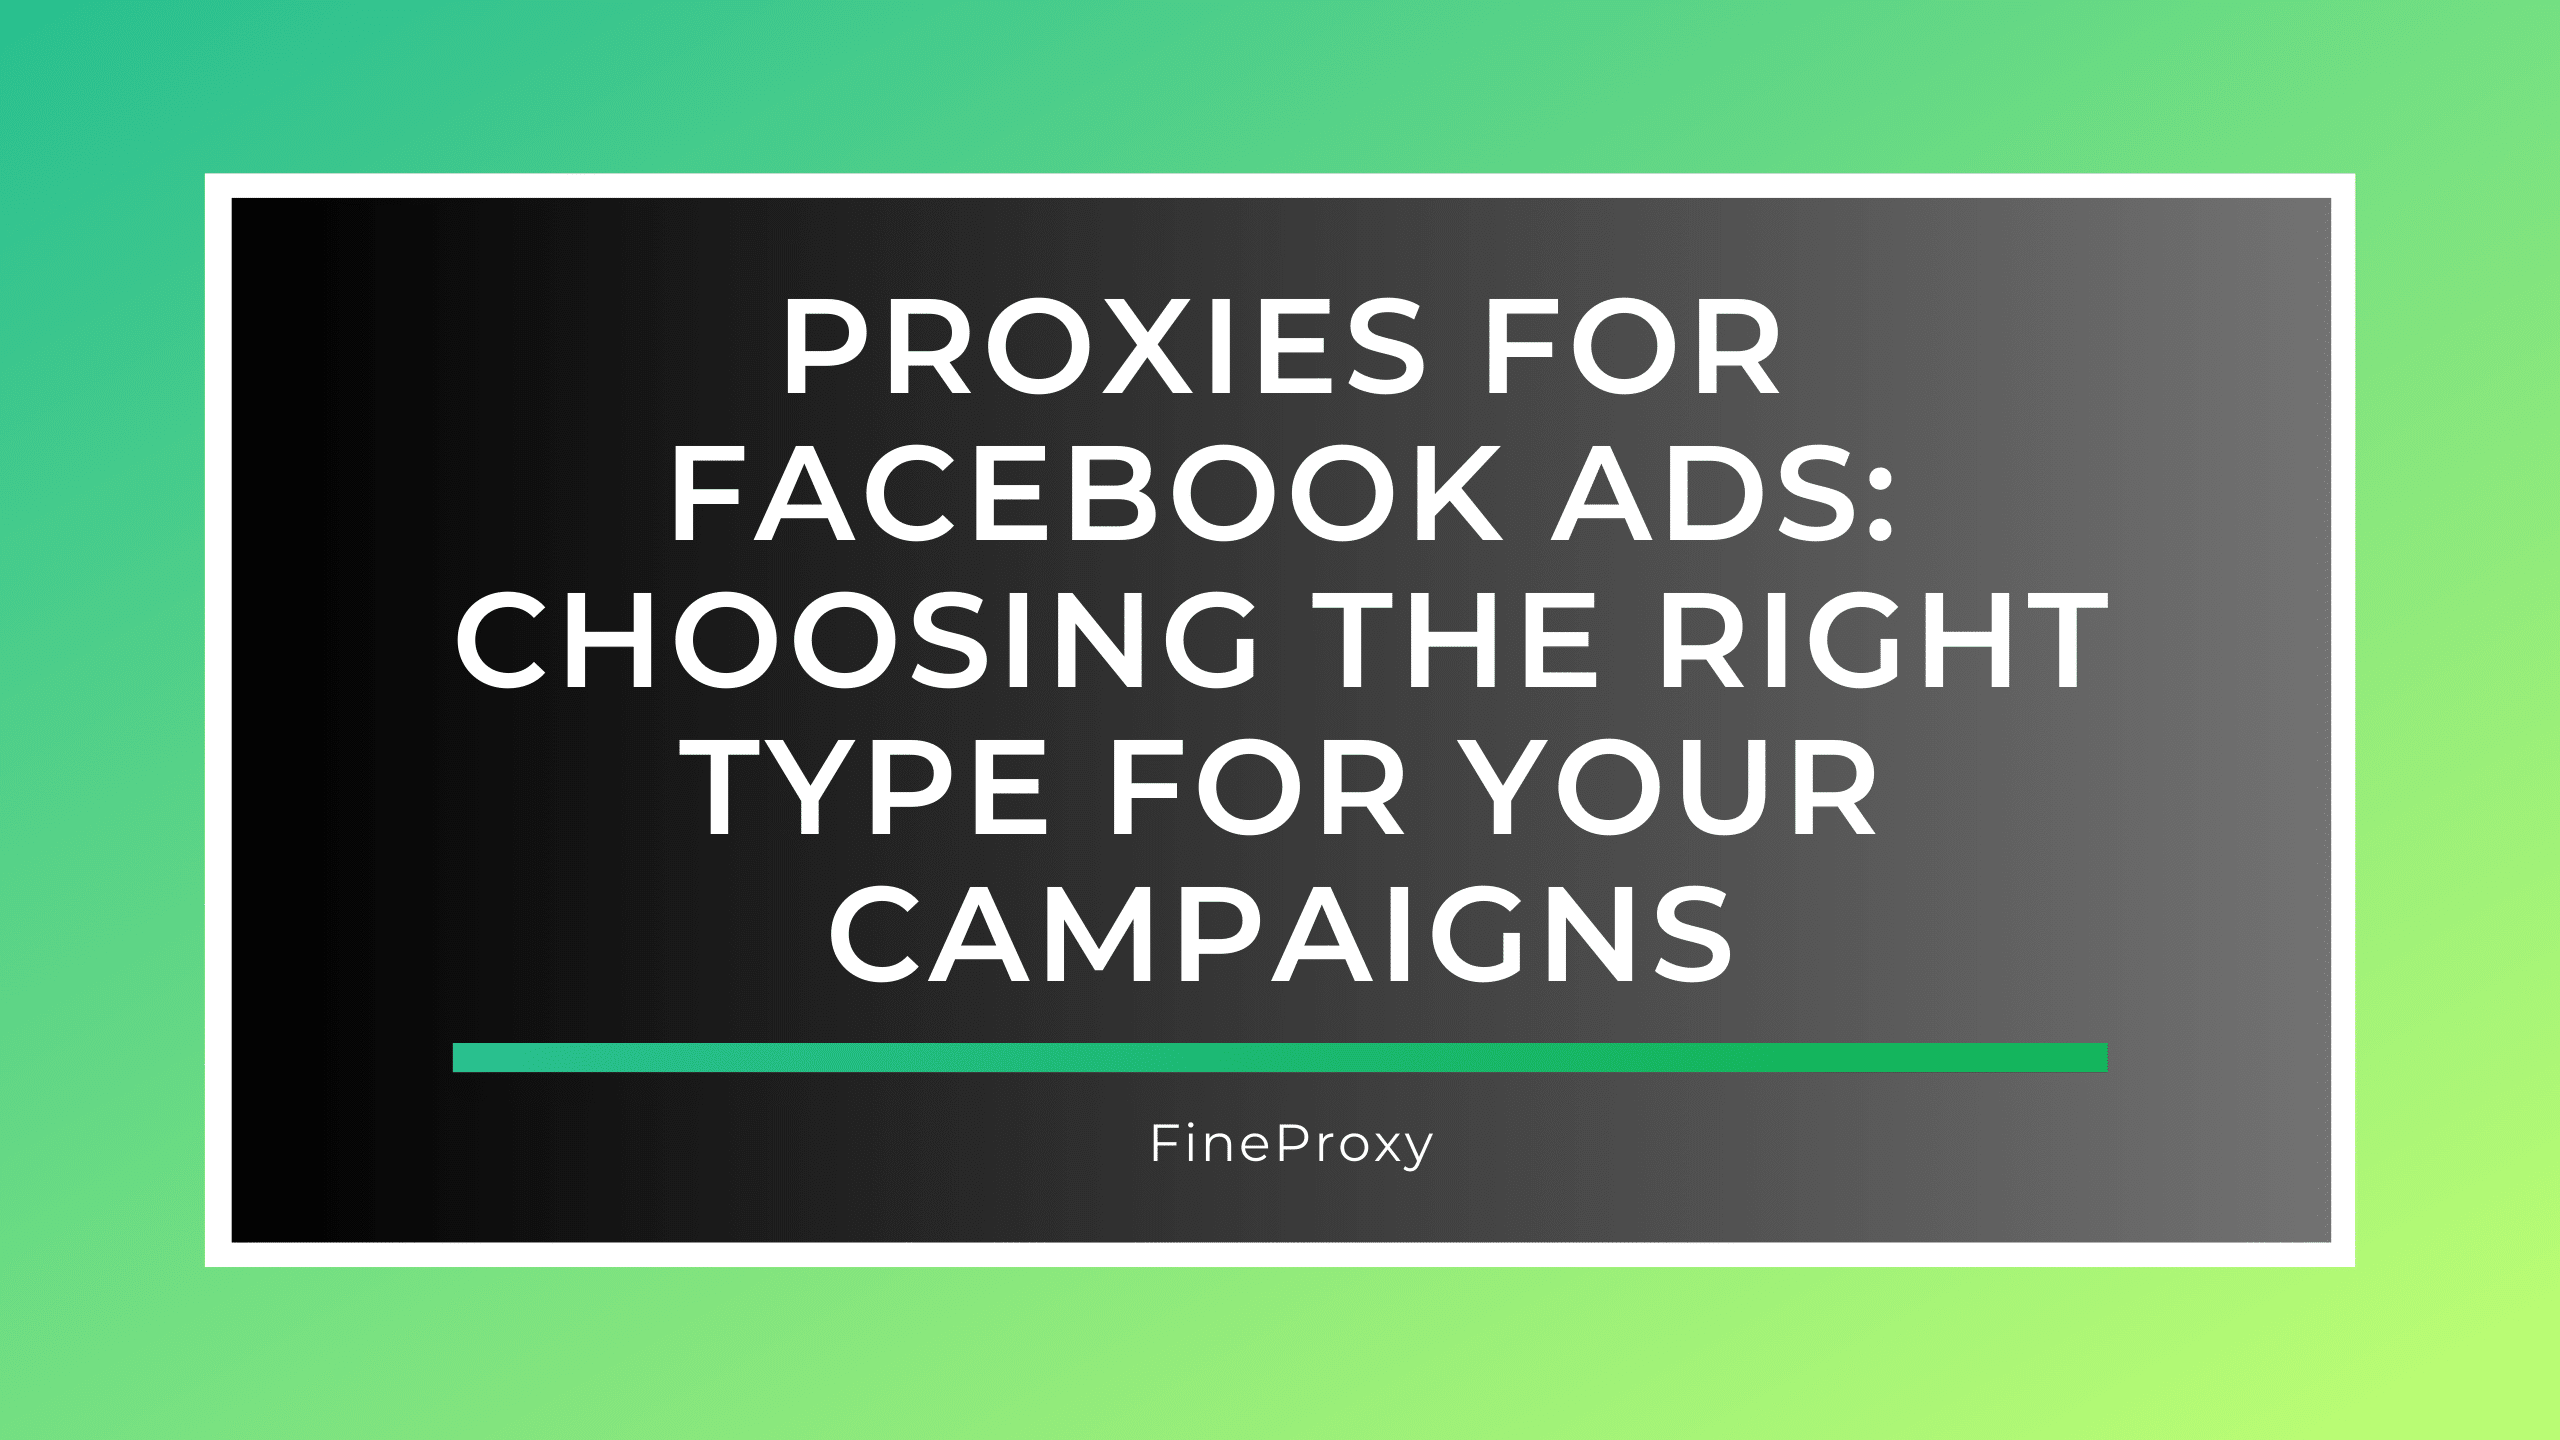 Proxy's voor Facebook-advertenties: het juiste type voor uw campagnes kiezen